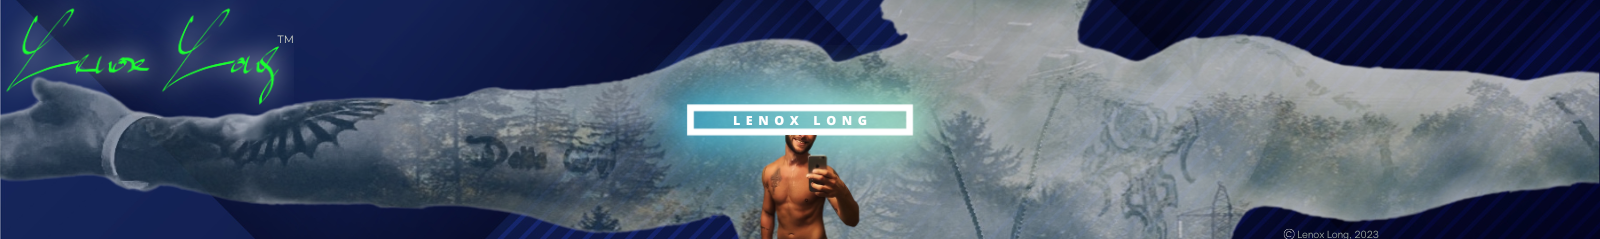 Lenox long TV